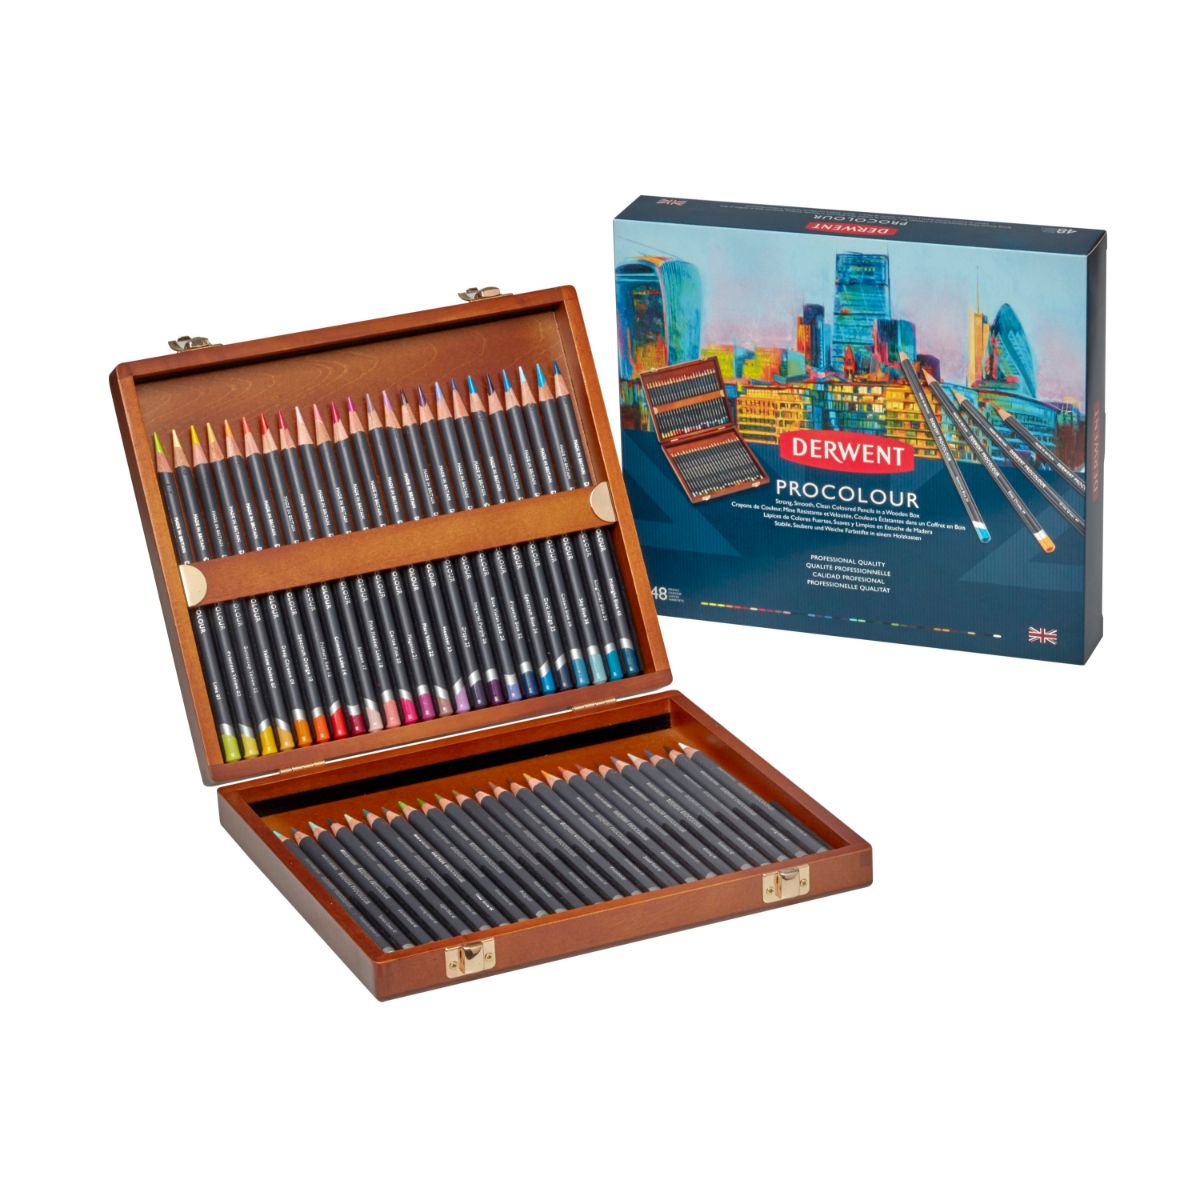 ダーウェント プロカラー ウッドボックス48色 文具 高級色鉛筆 イギリス製